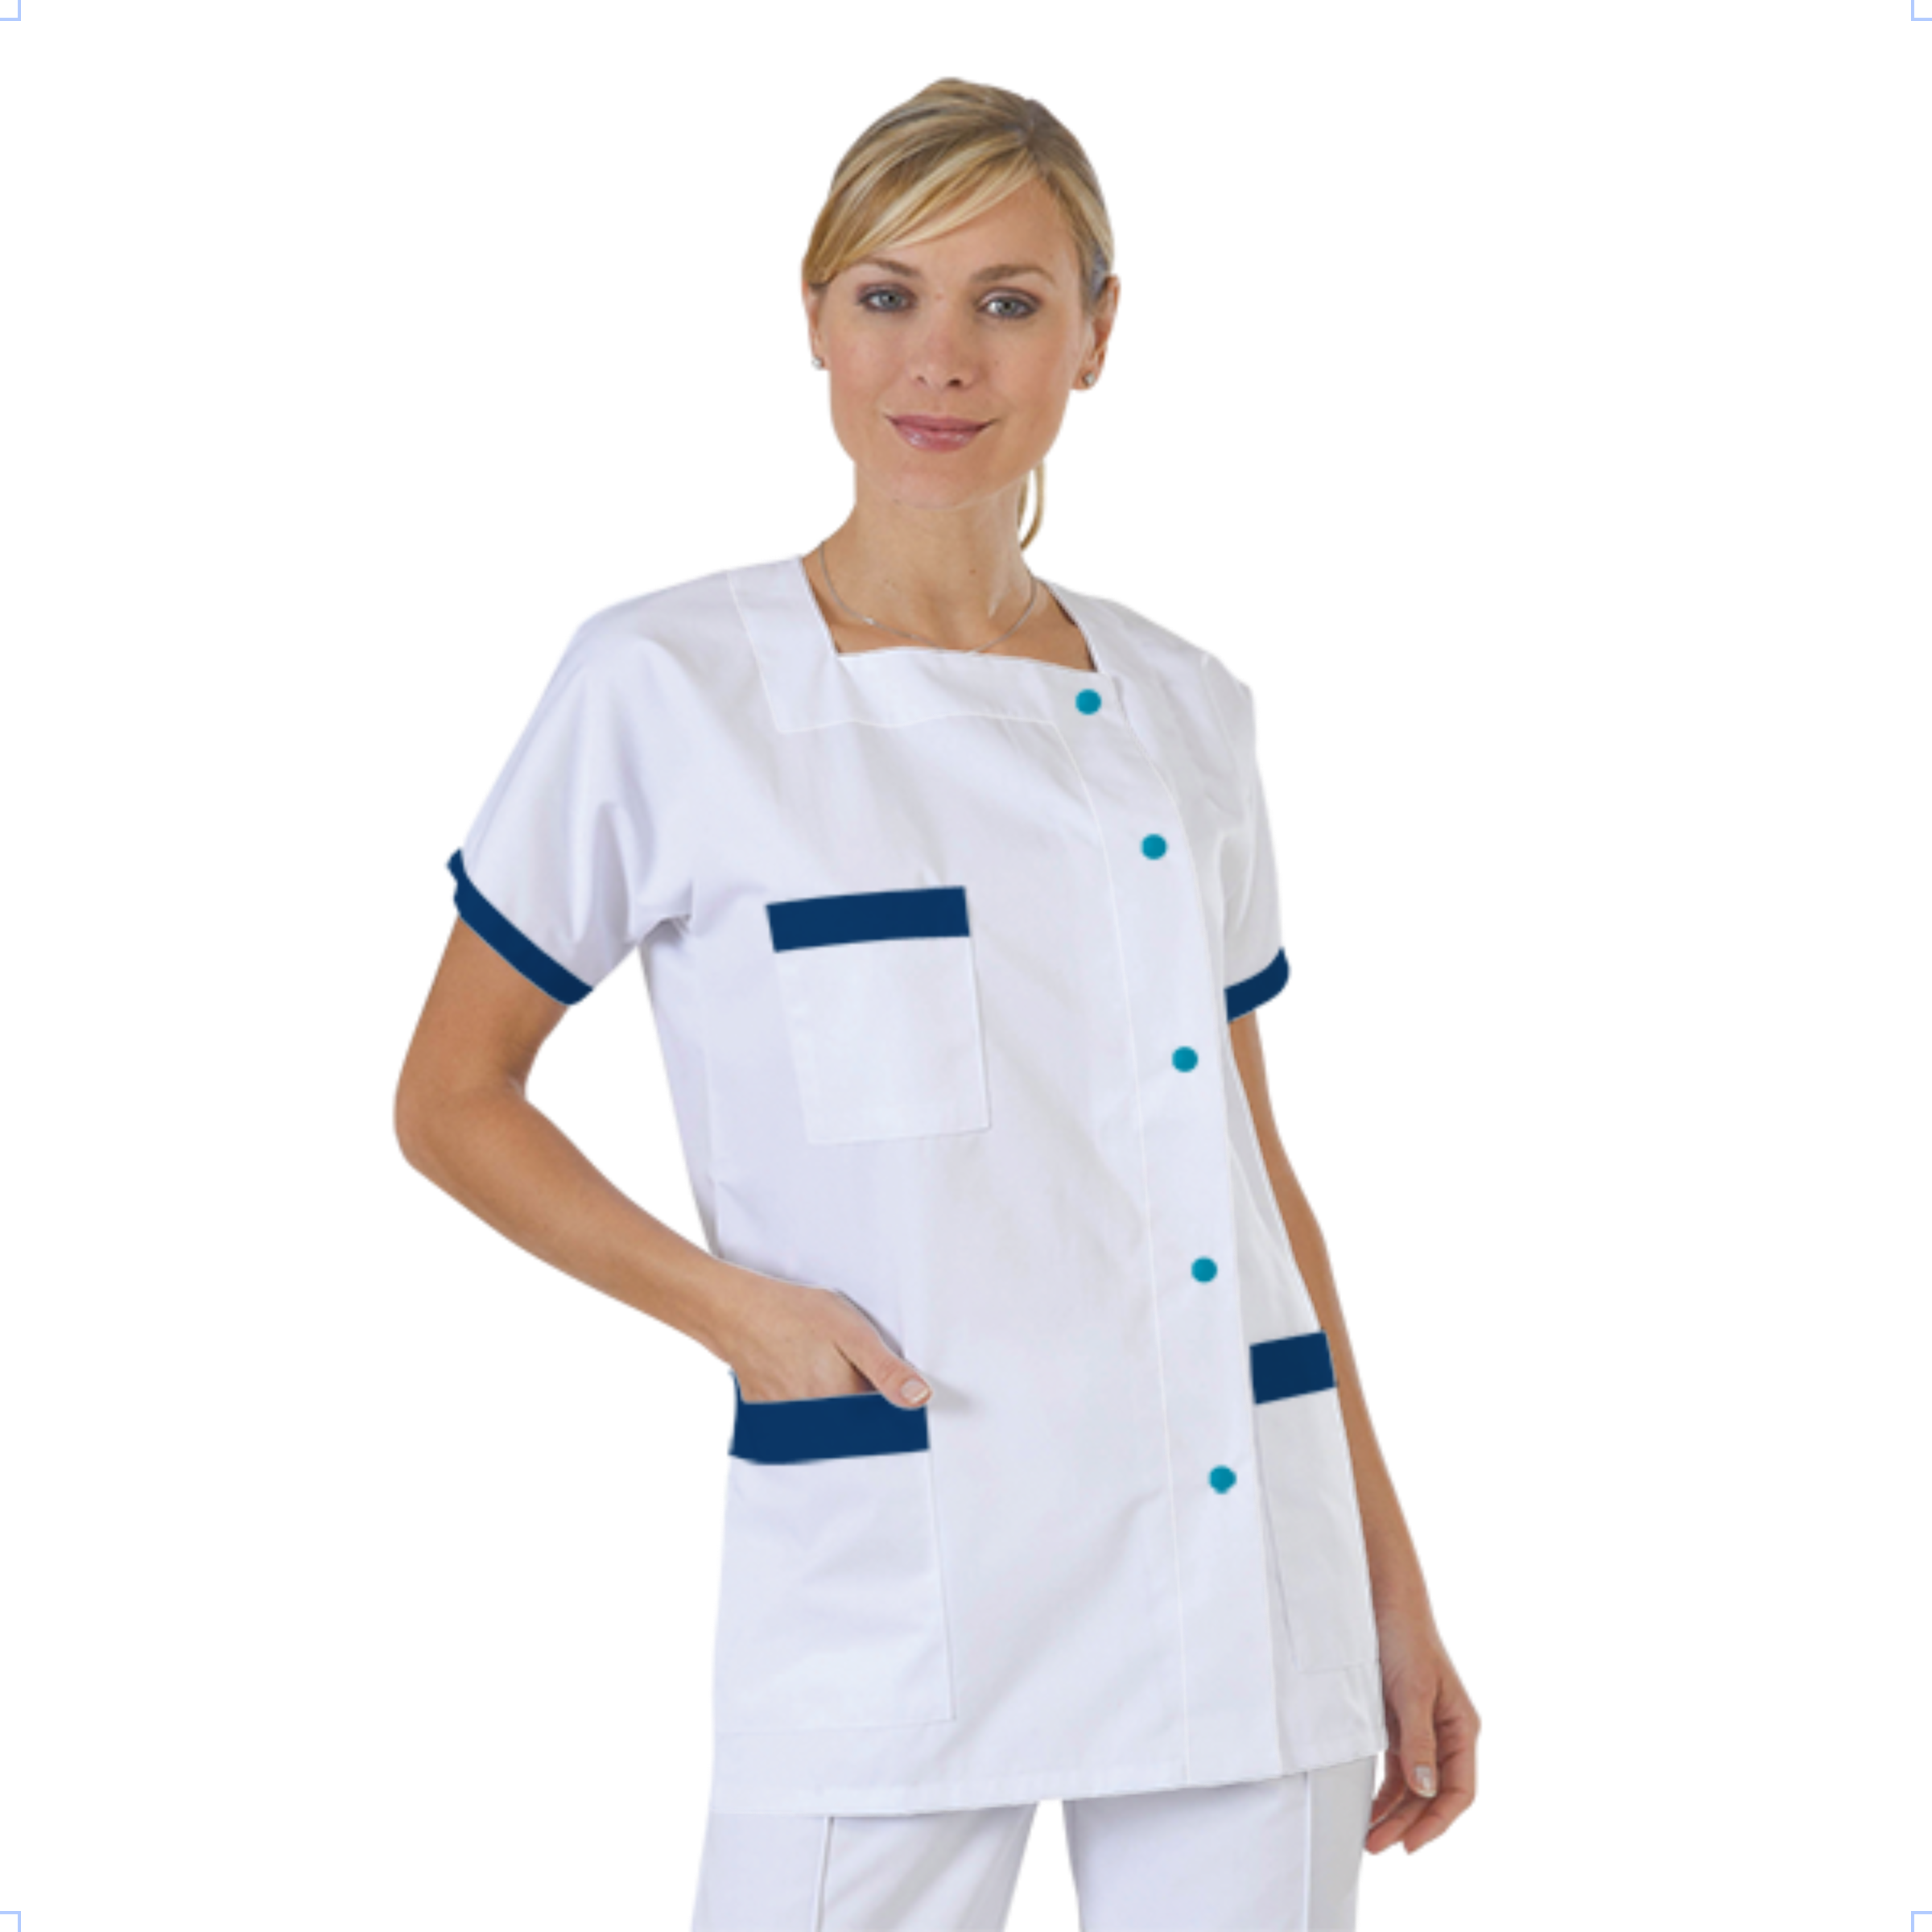 blouse-medicale-col-carre-a-personnaliser acheté - par Chloe - le 09-03-2020